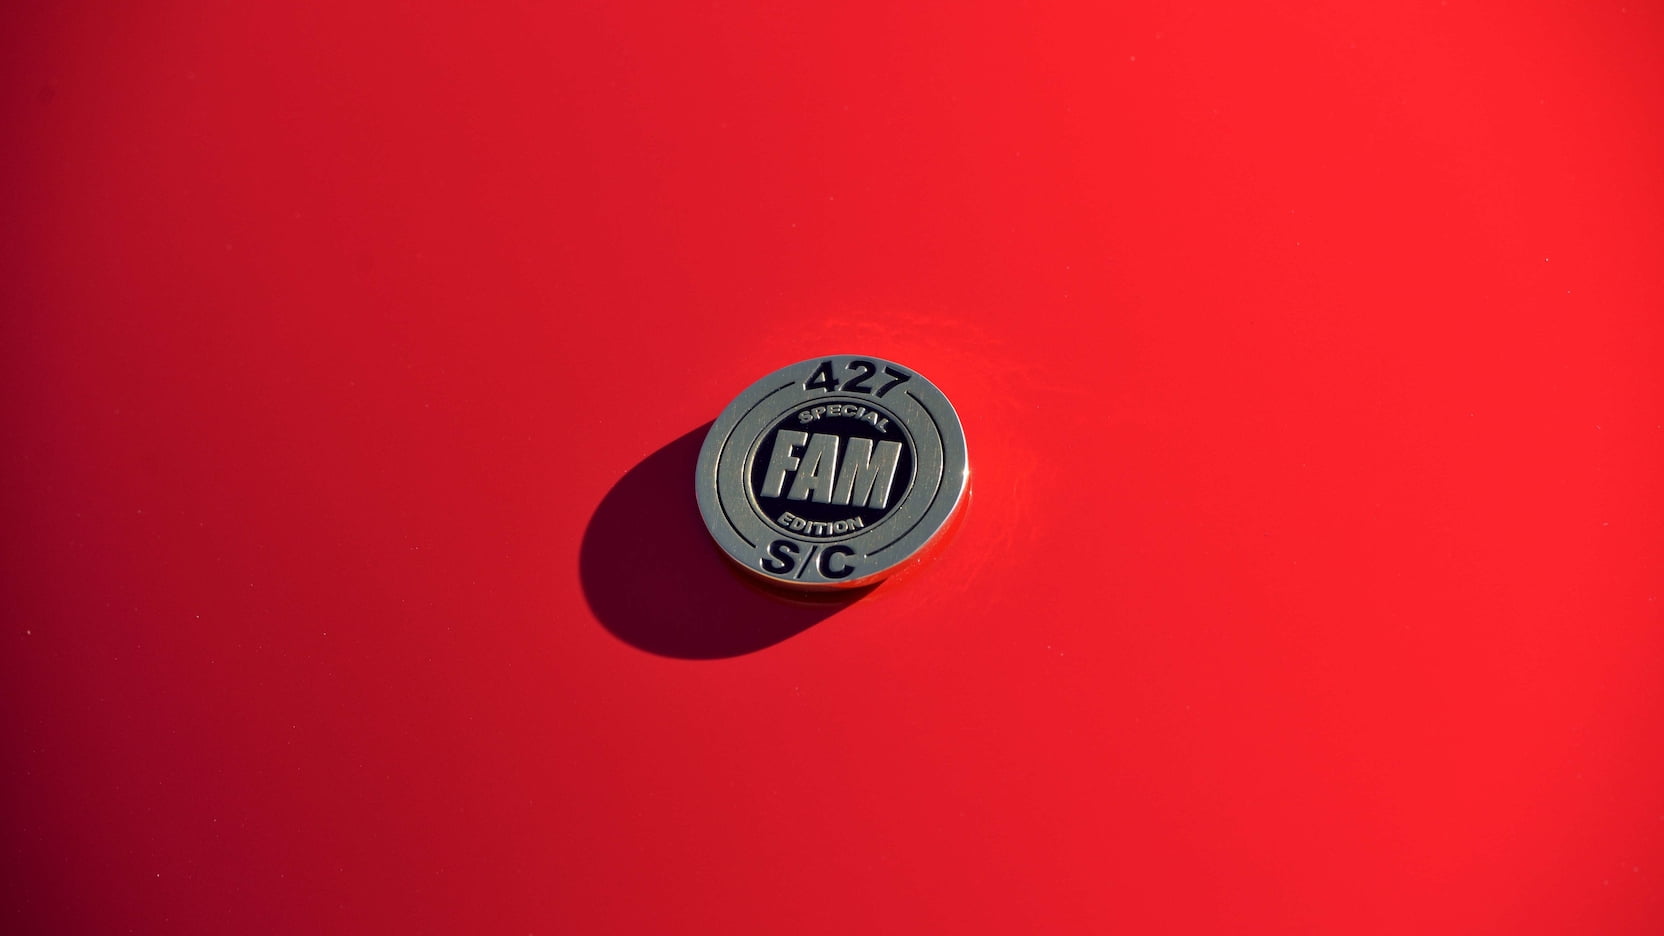 Shelby Cobra FAM - Emblem Details